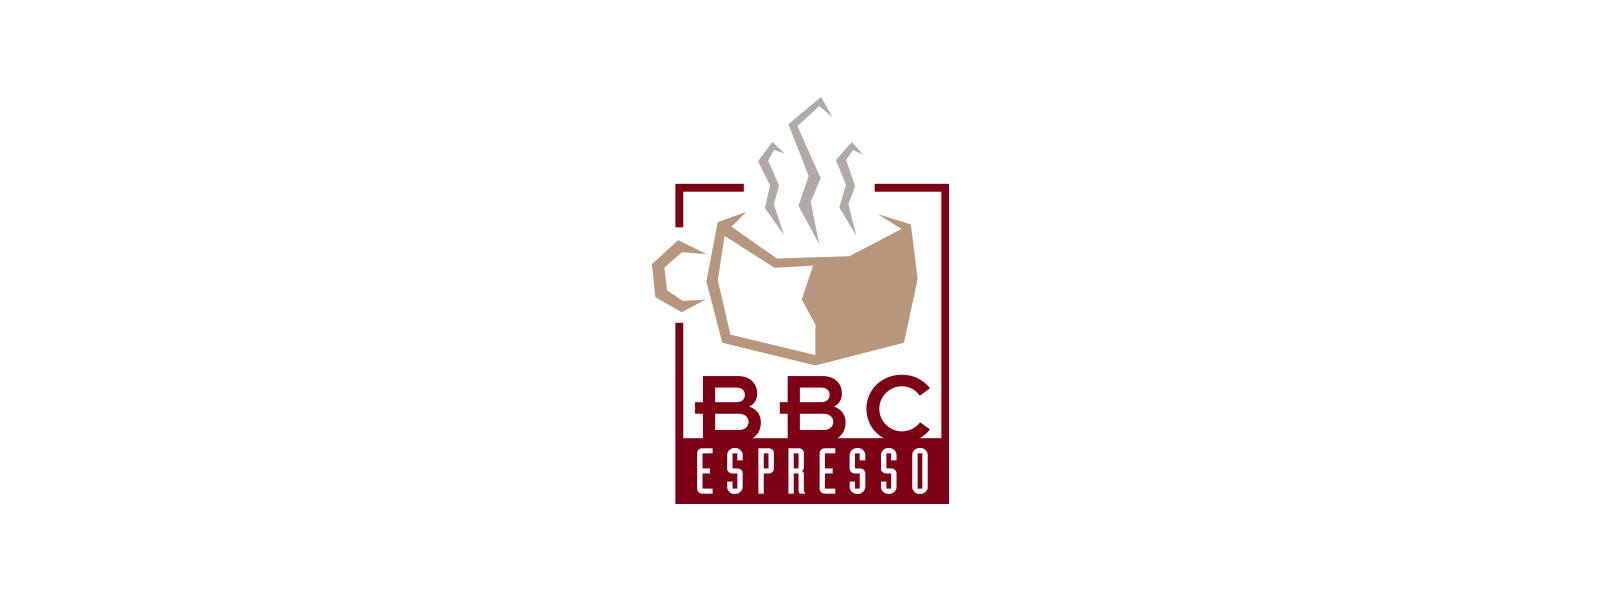 BBC Espresso logo